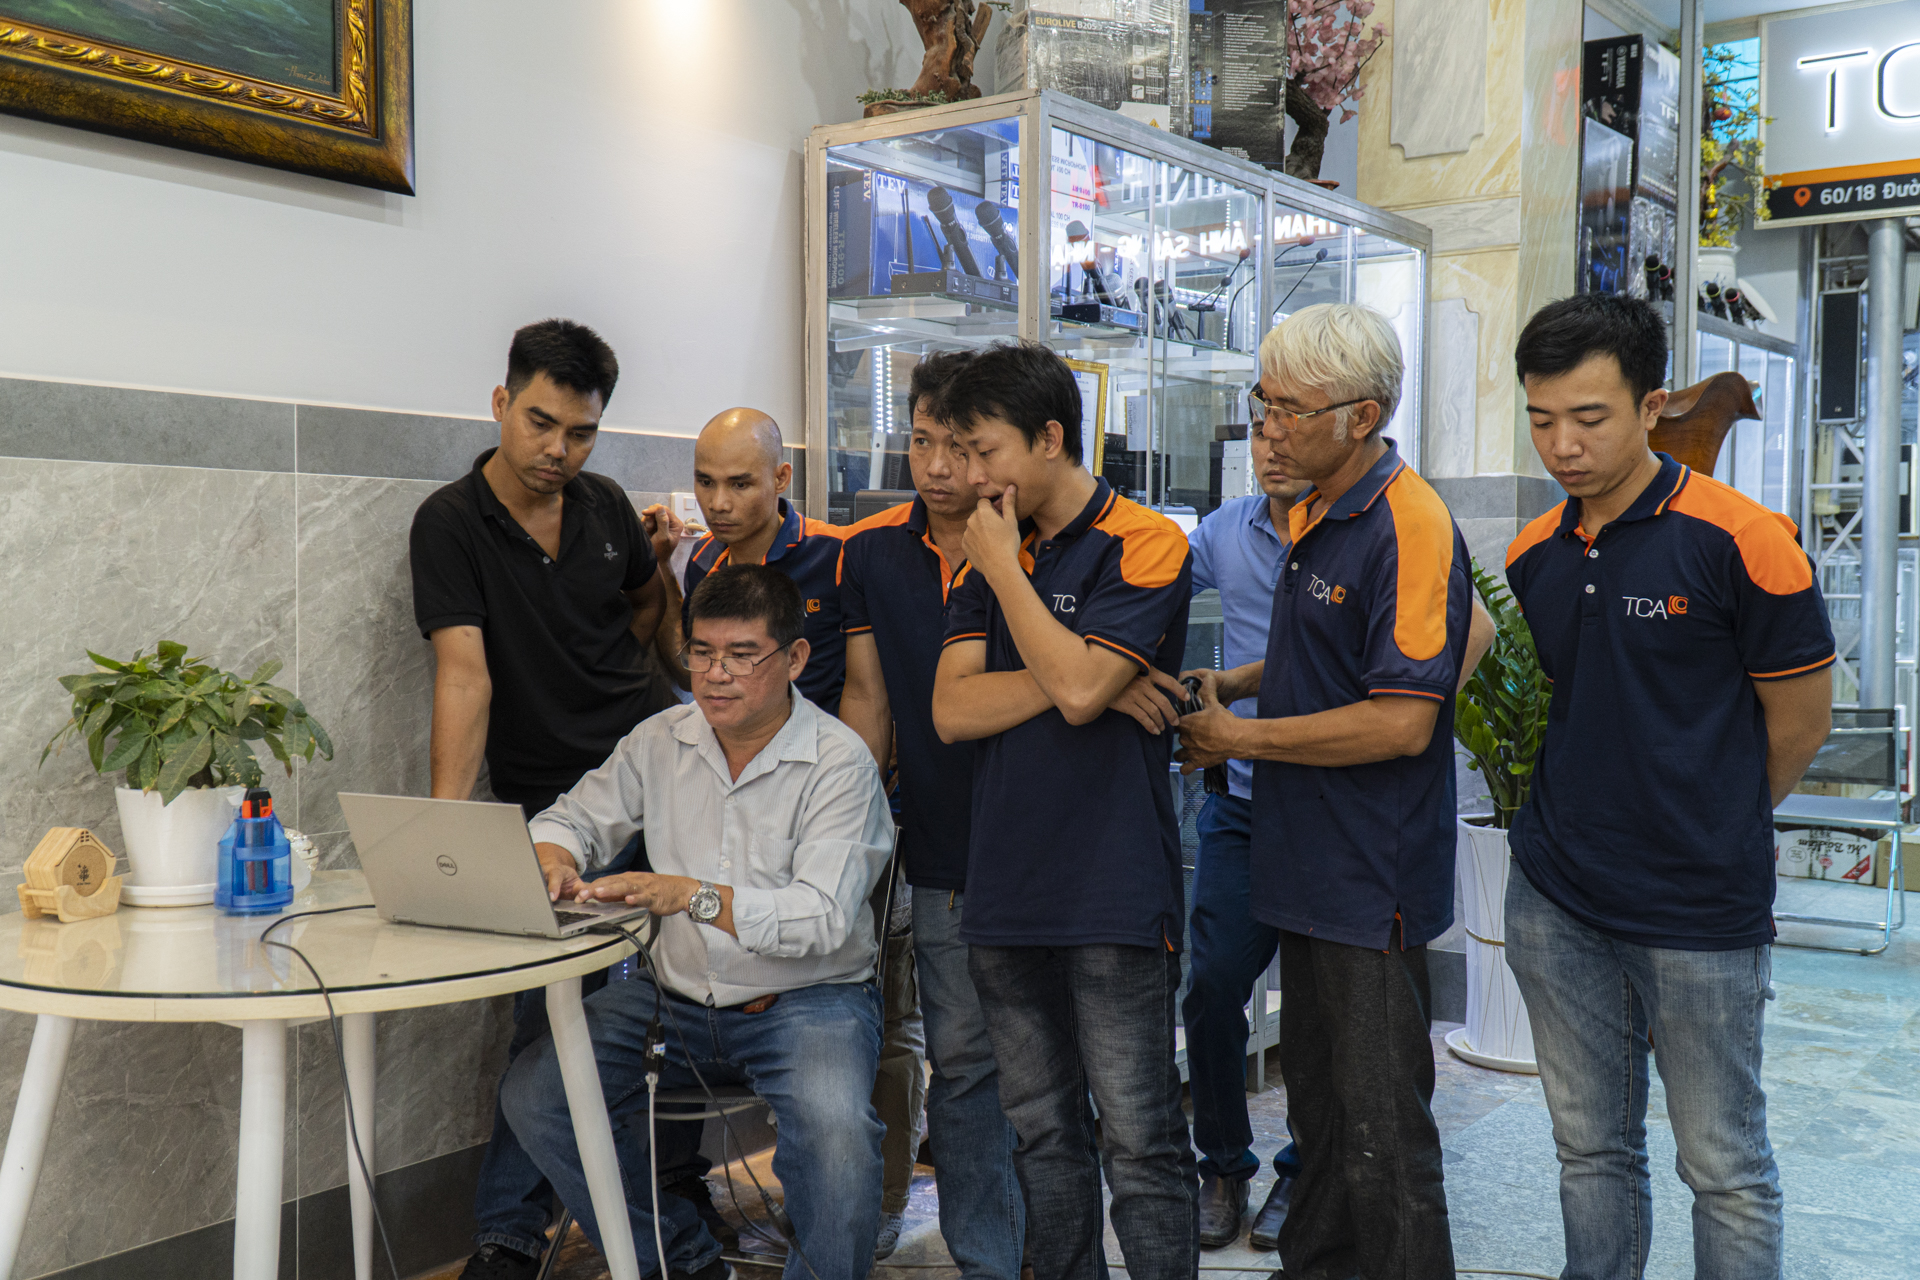 P.Audio giới thiệu sản phẩm thiết bị âm thanh tại TCA Hồ Chí Minh